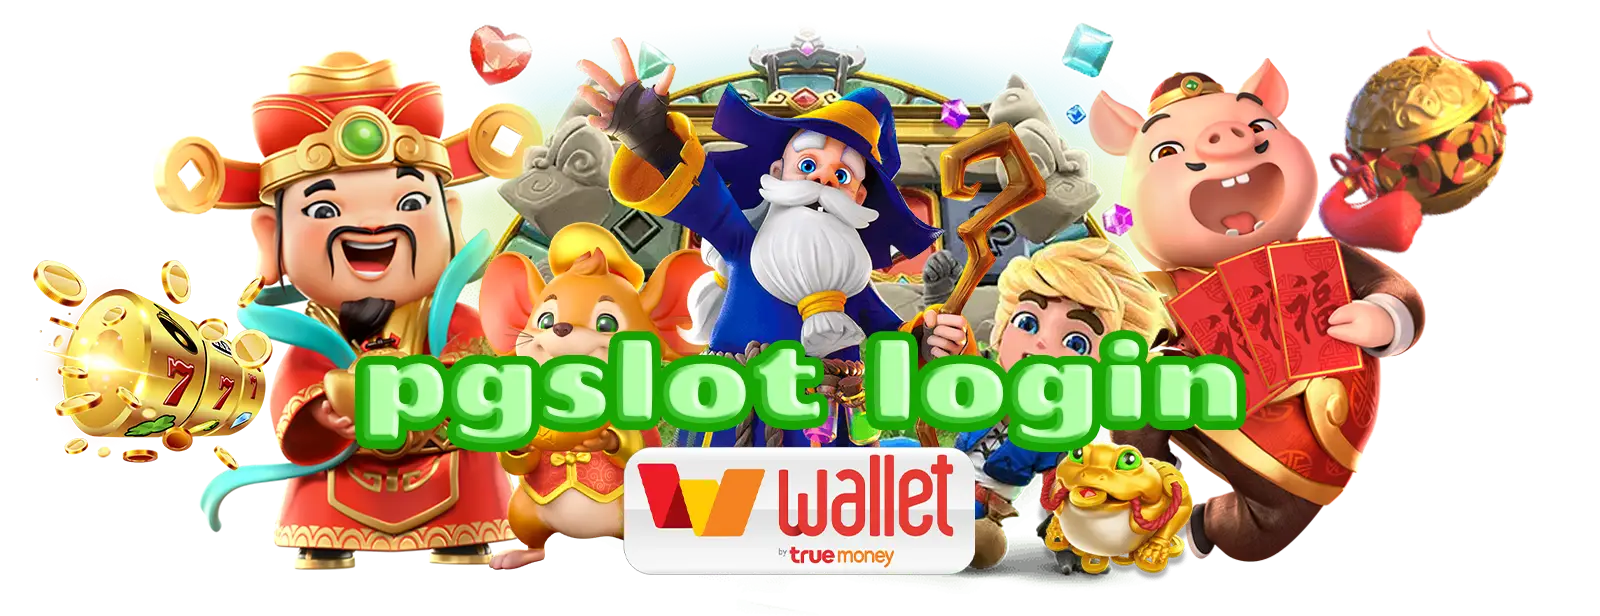 pgslot login ค่ายเกม อันดับหนึ่ง ของประเทศไทย